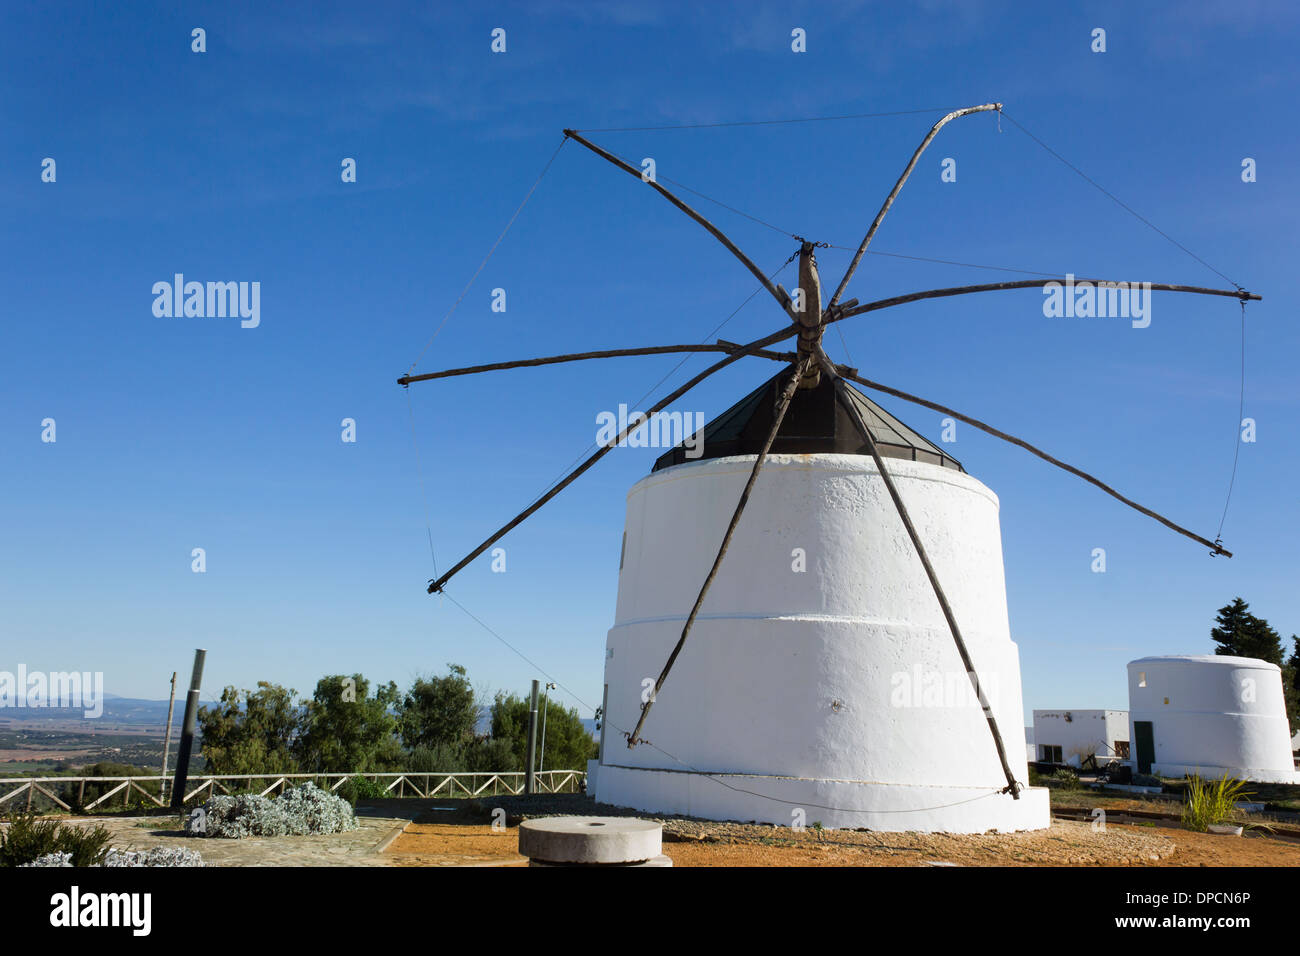 Vejer de la Frontera, province de Cadiz, Espagne. Ancien moulin construit en 1860. Banque D'Images